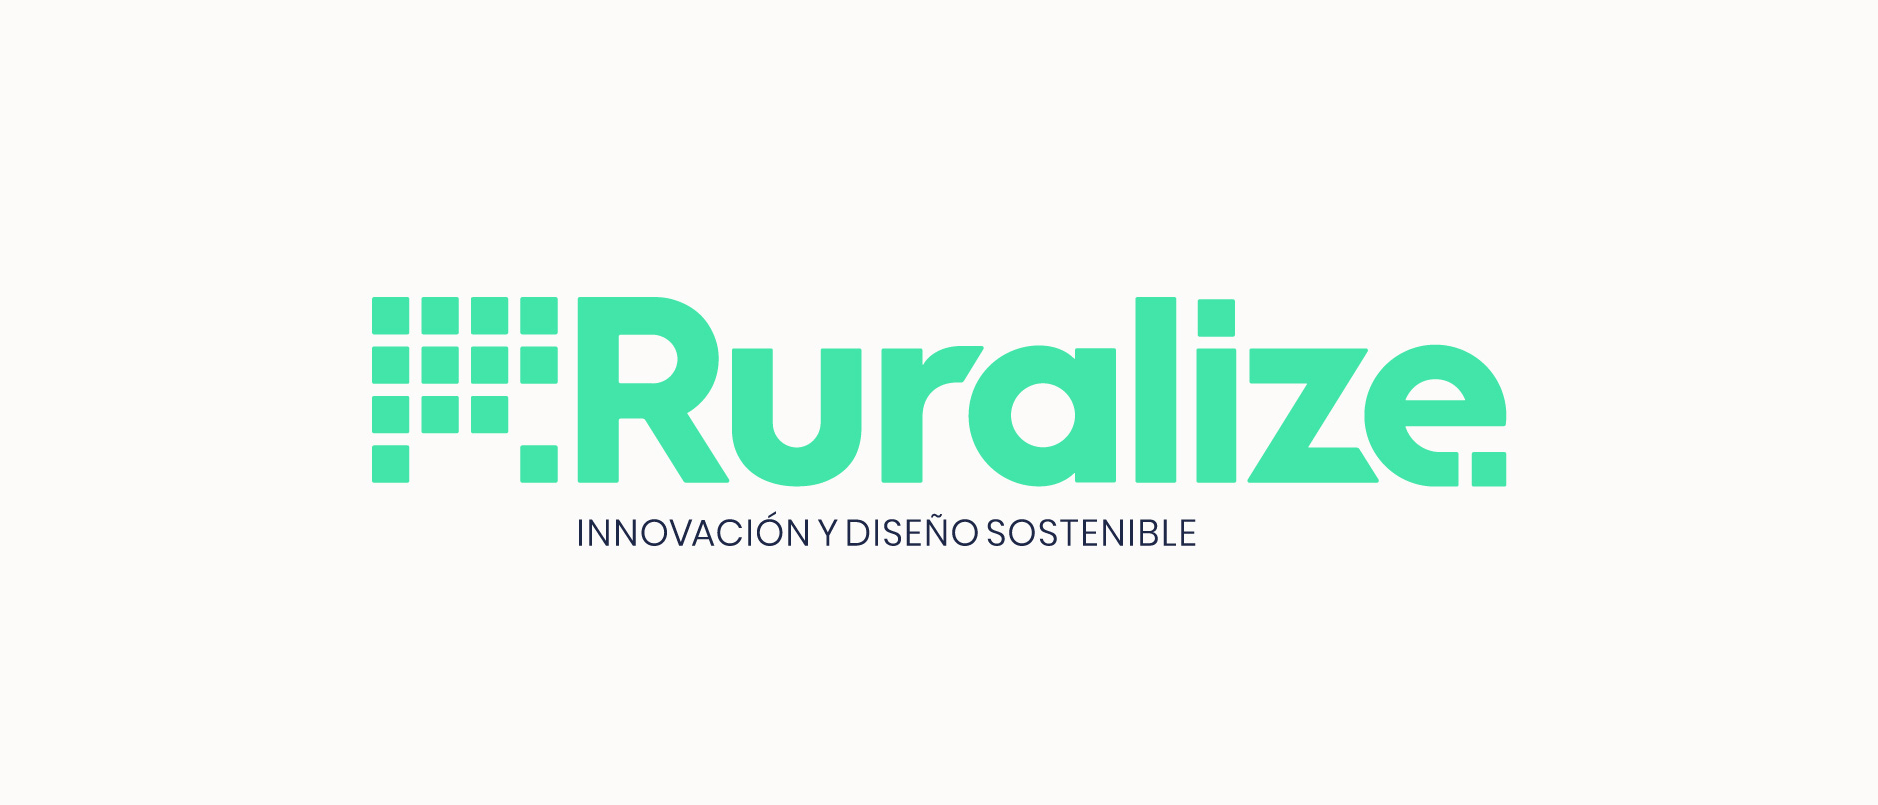 Diseño de Logotipo Ruralize Innovación Diseño Sostenible - tabarestabares